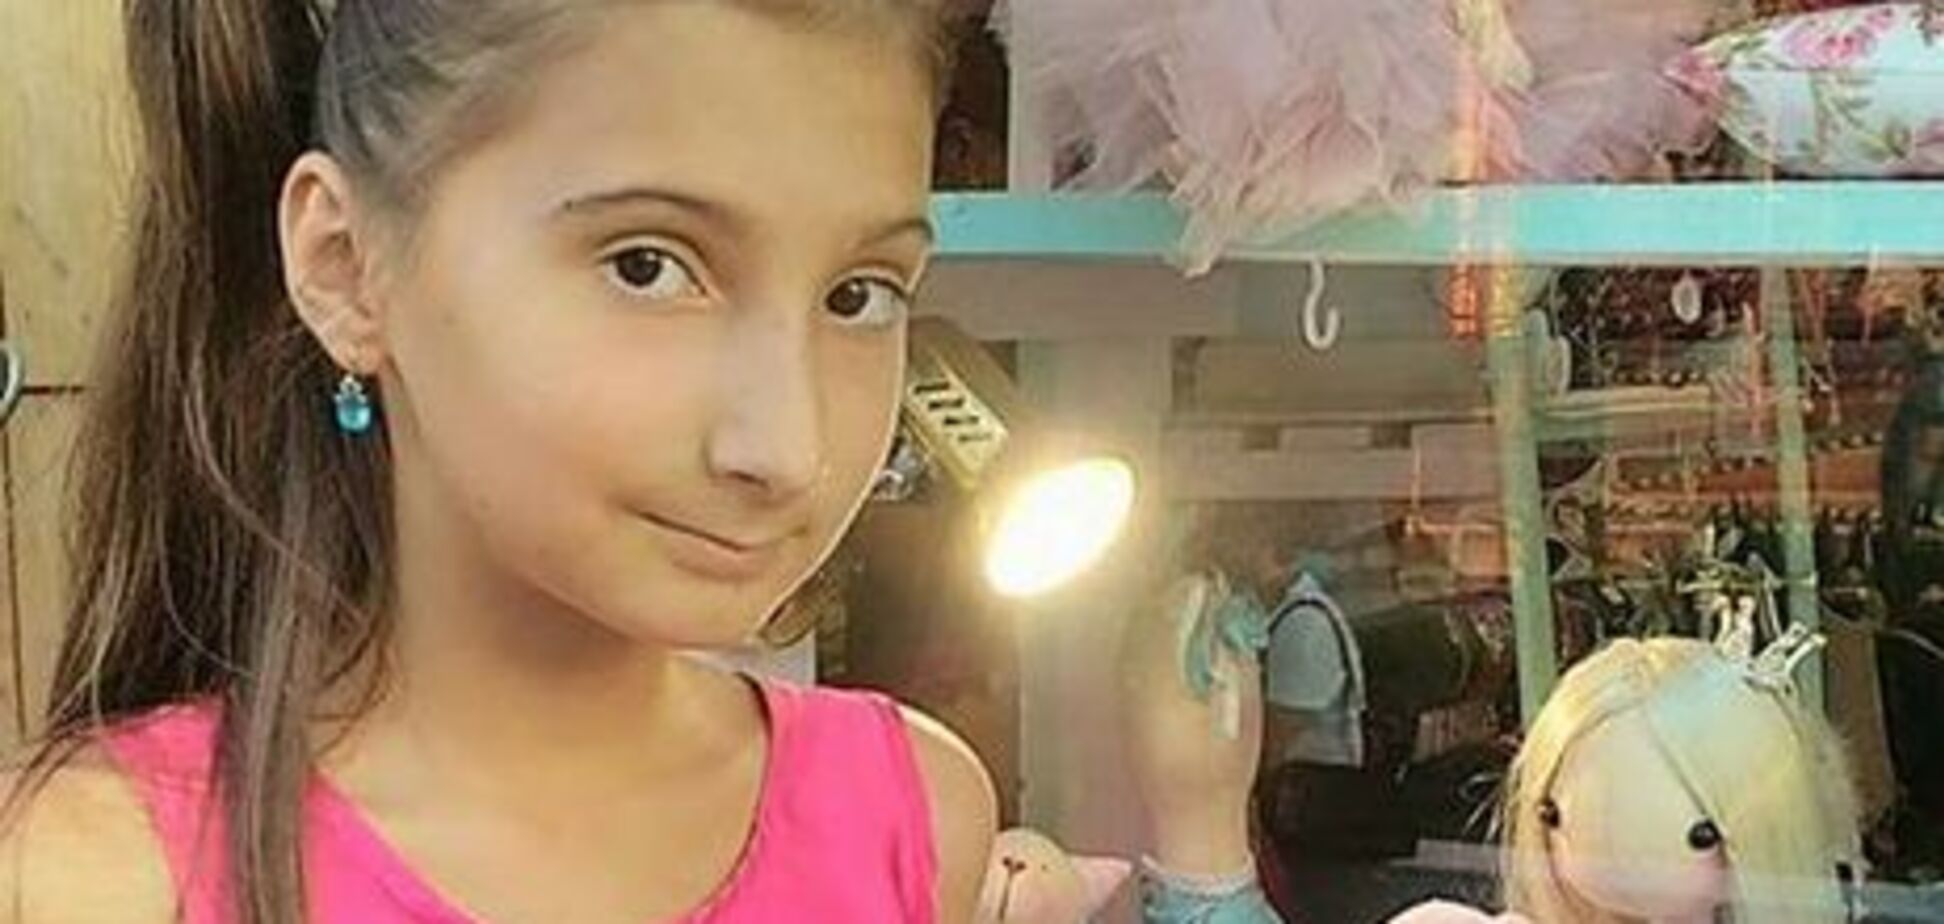 Появилась информация о судьбе девочки, пропавшей во время пожара в Одессе